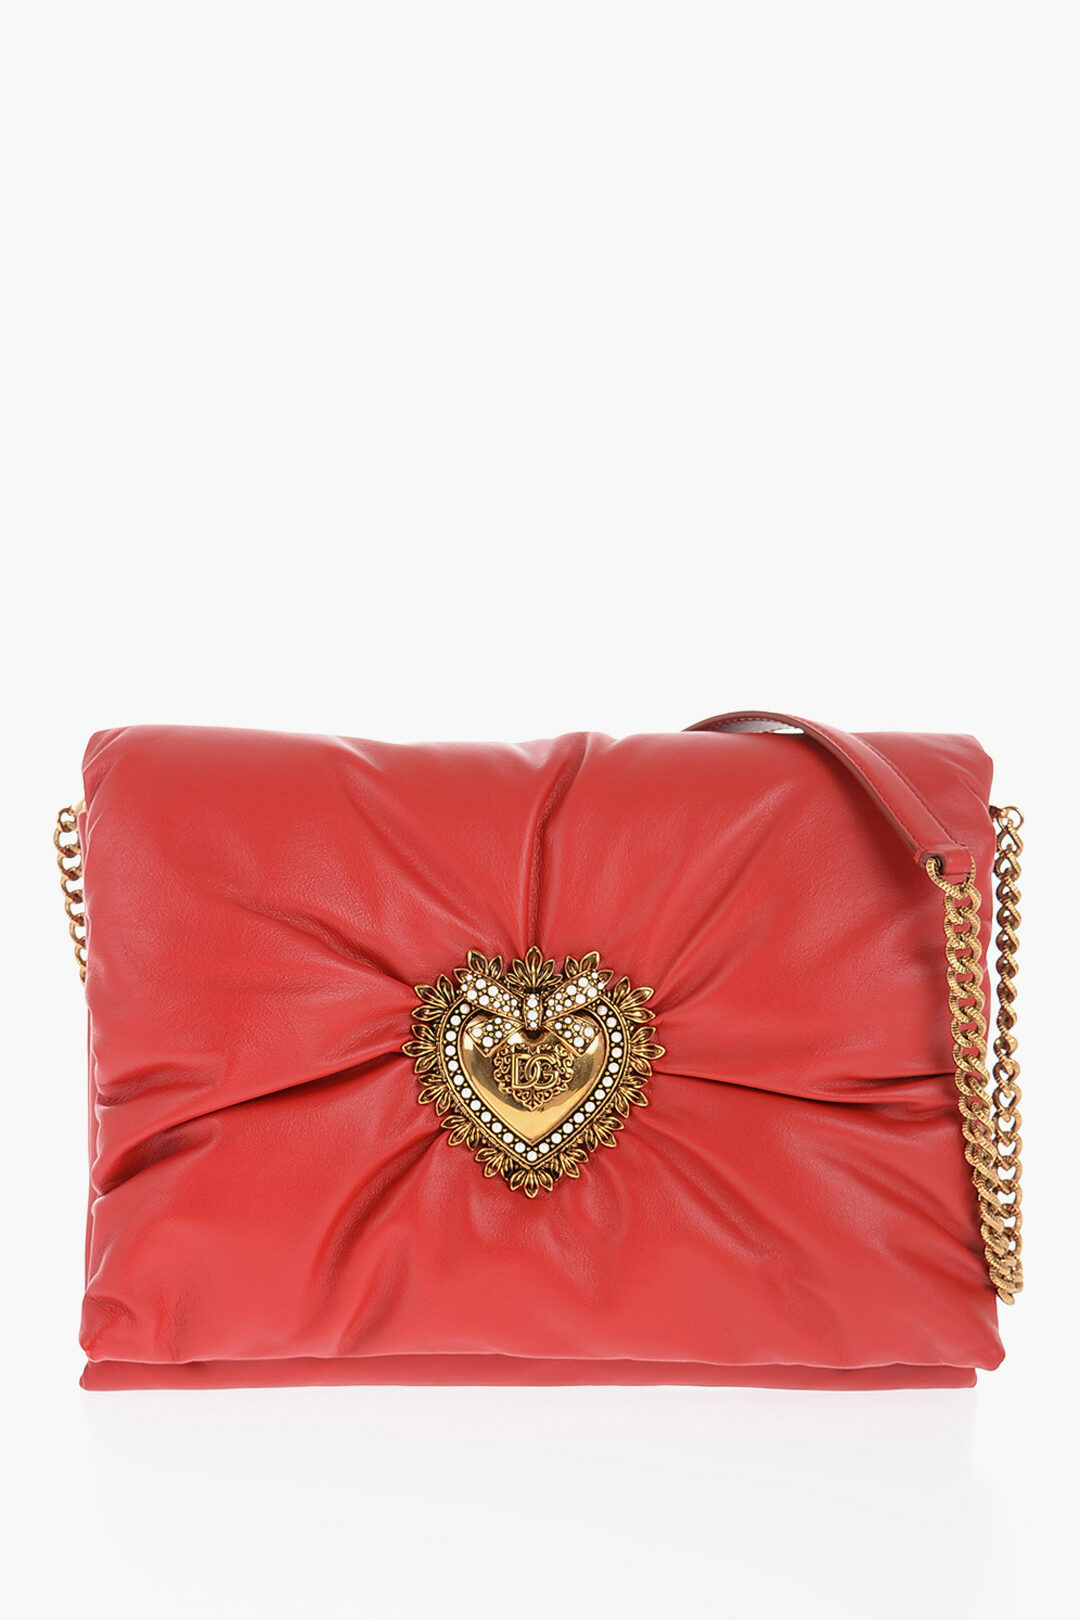 Dolce & Gabbana - Devotion Small Embellished Leather Shoulder Bag